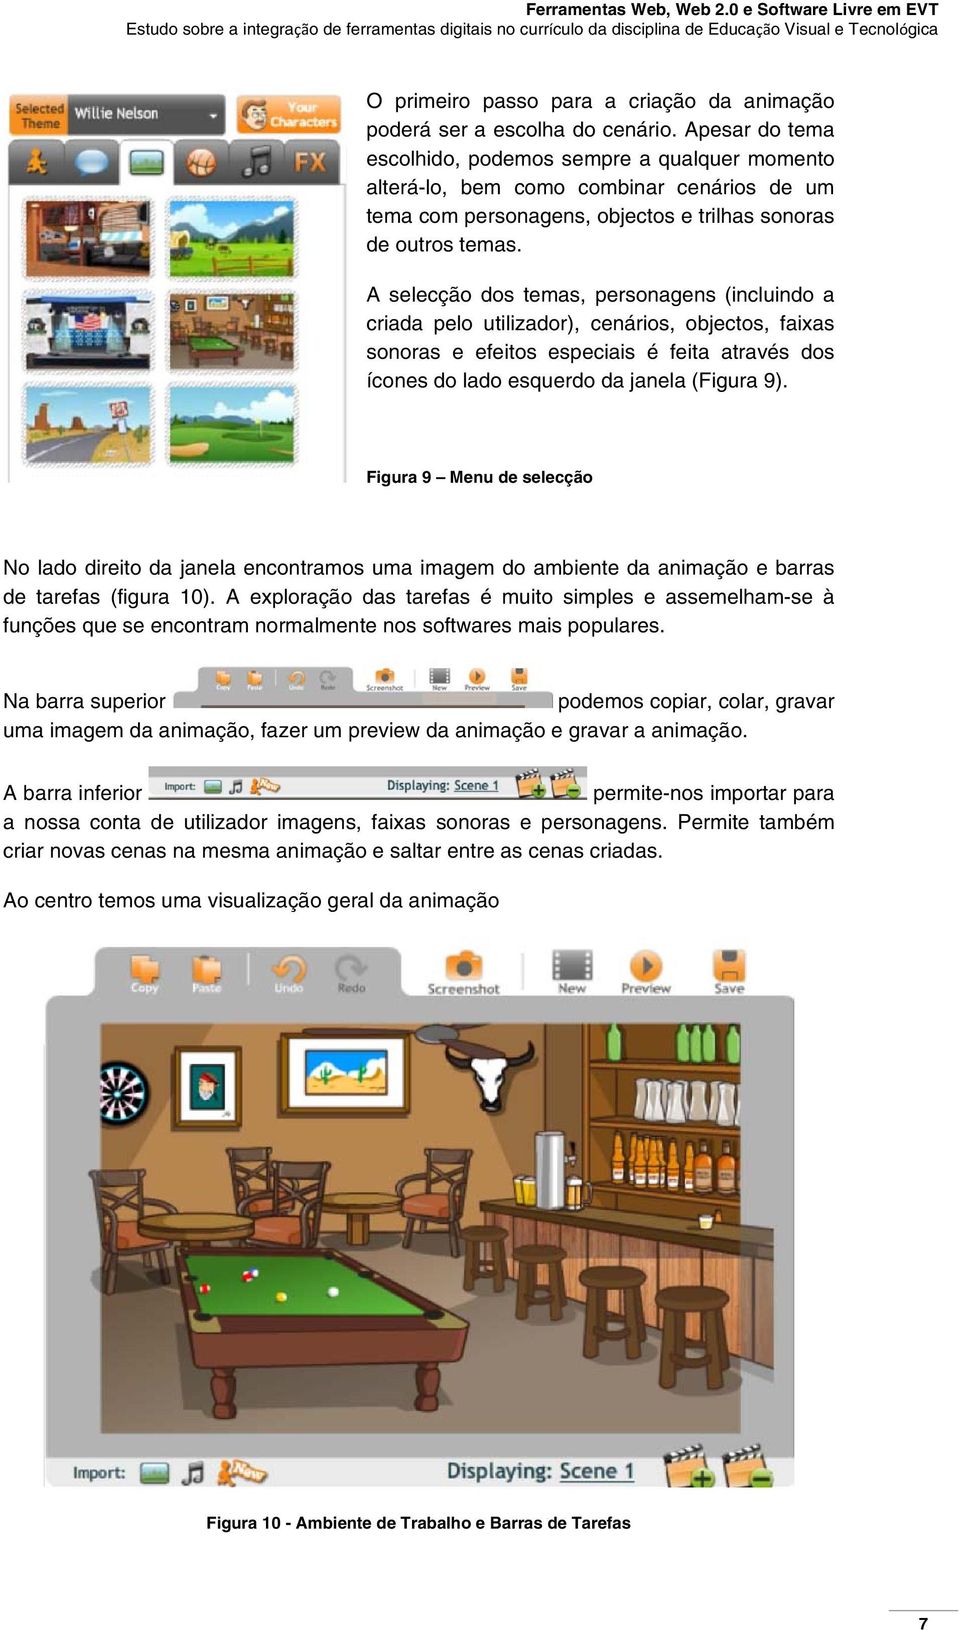 A selecção dos temas, personagens (incluindo a criada pelo utilizador), cenários, objectos, faixas sonoras e efeitos especiais é feita através dos ícones do lado esquerdo da janela (Figura 9).